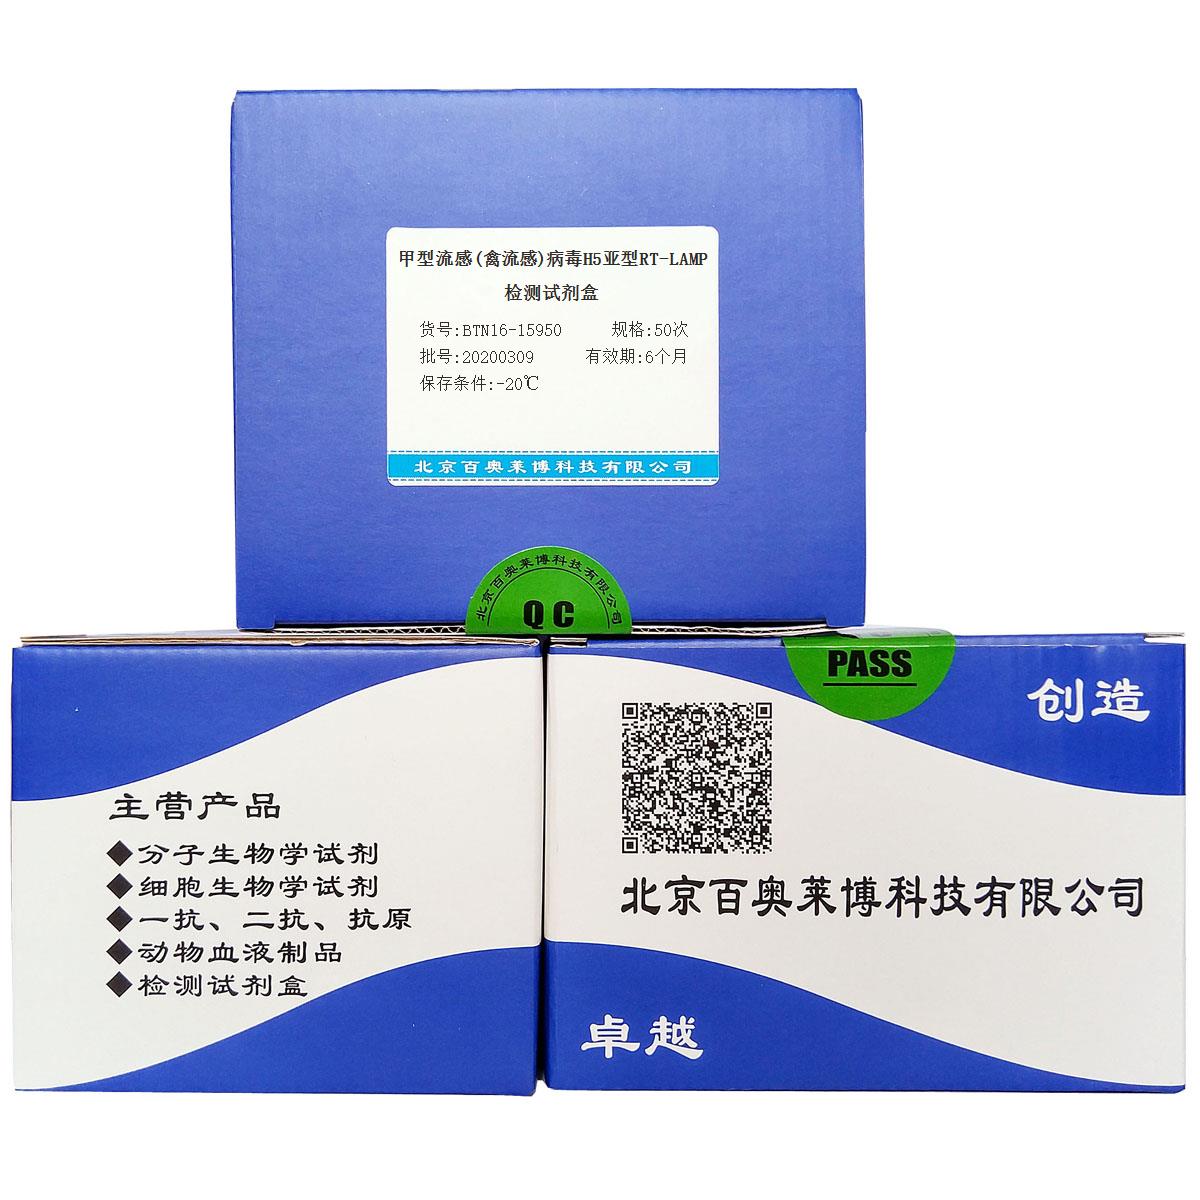 甲型流感(禽流感)病毒H5亚型RT-LAMP检测试剂盒